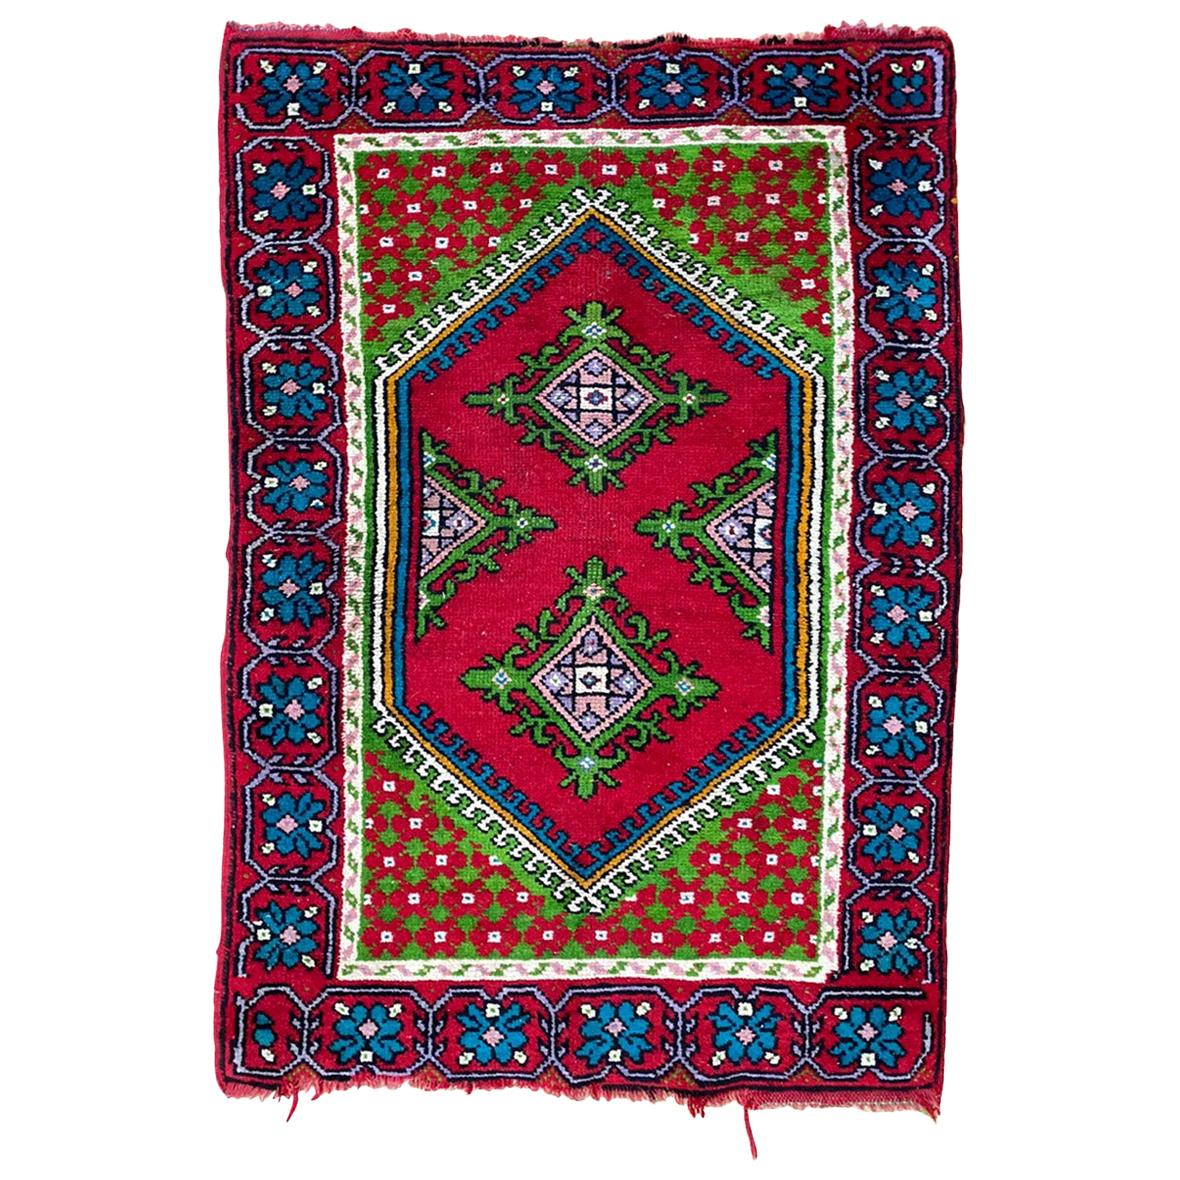 Tunisischer Kairouan-Teppich aus dem Jahr